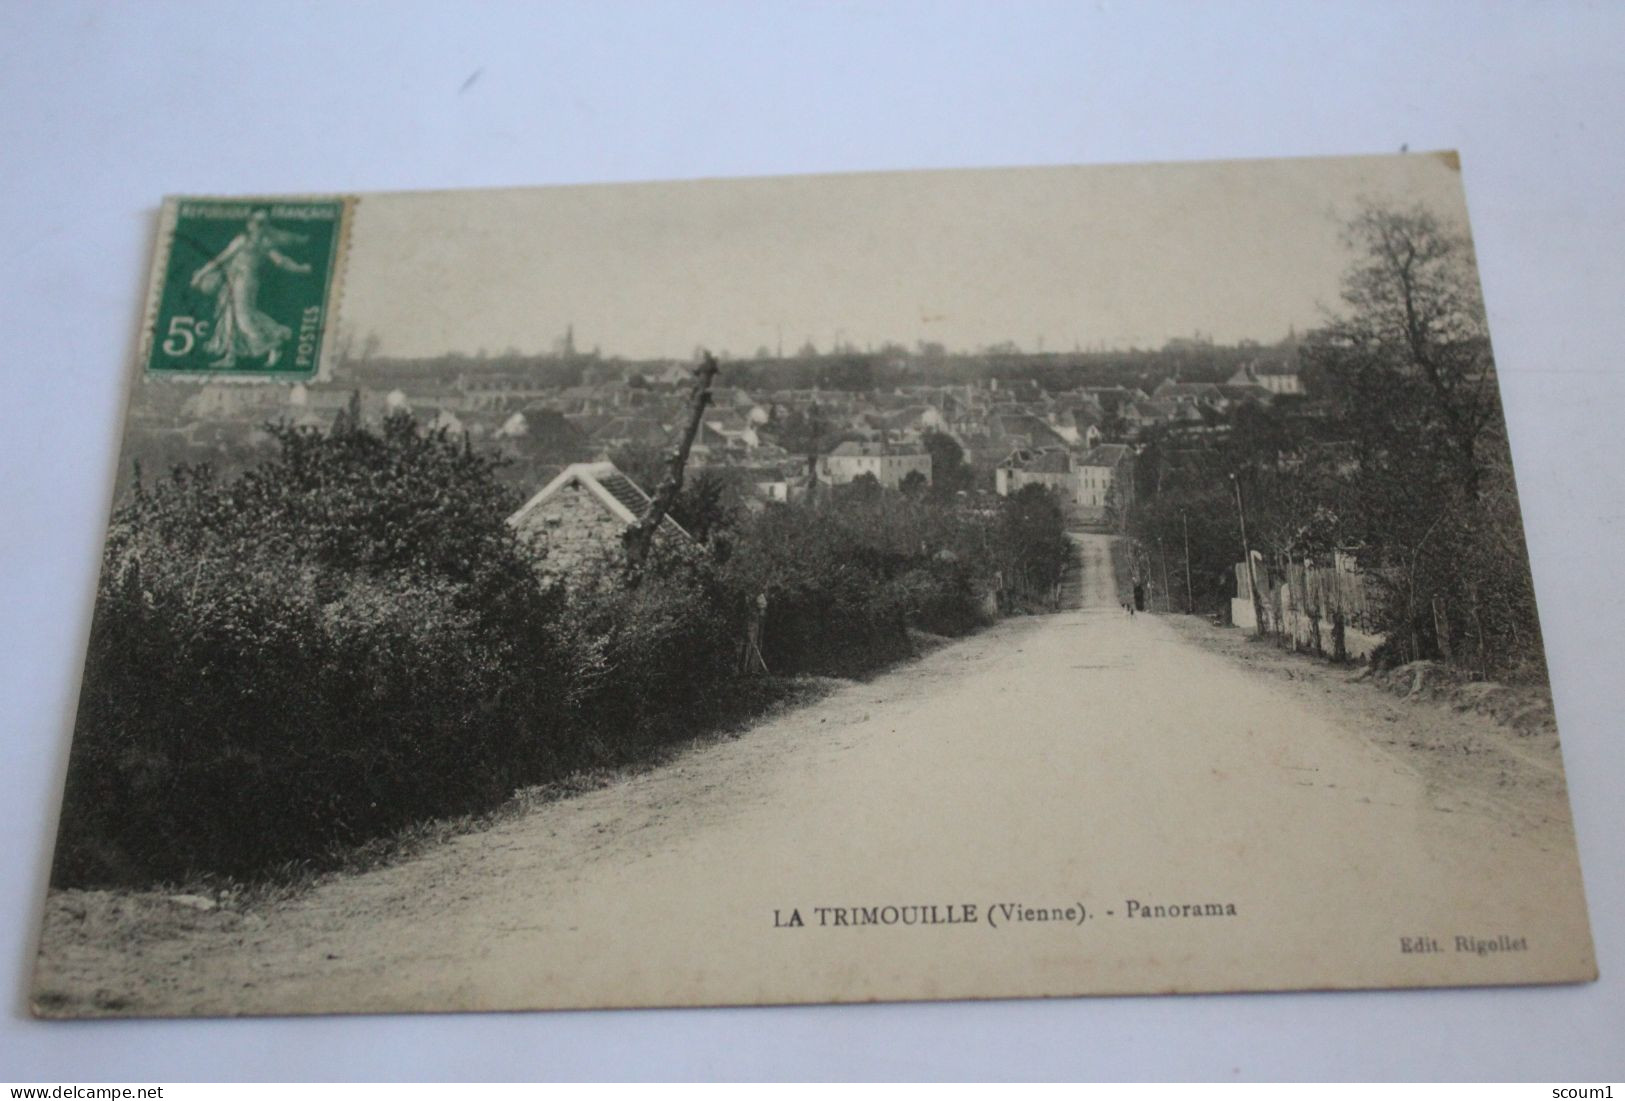 La Trimouille Panorama - La Trimouille